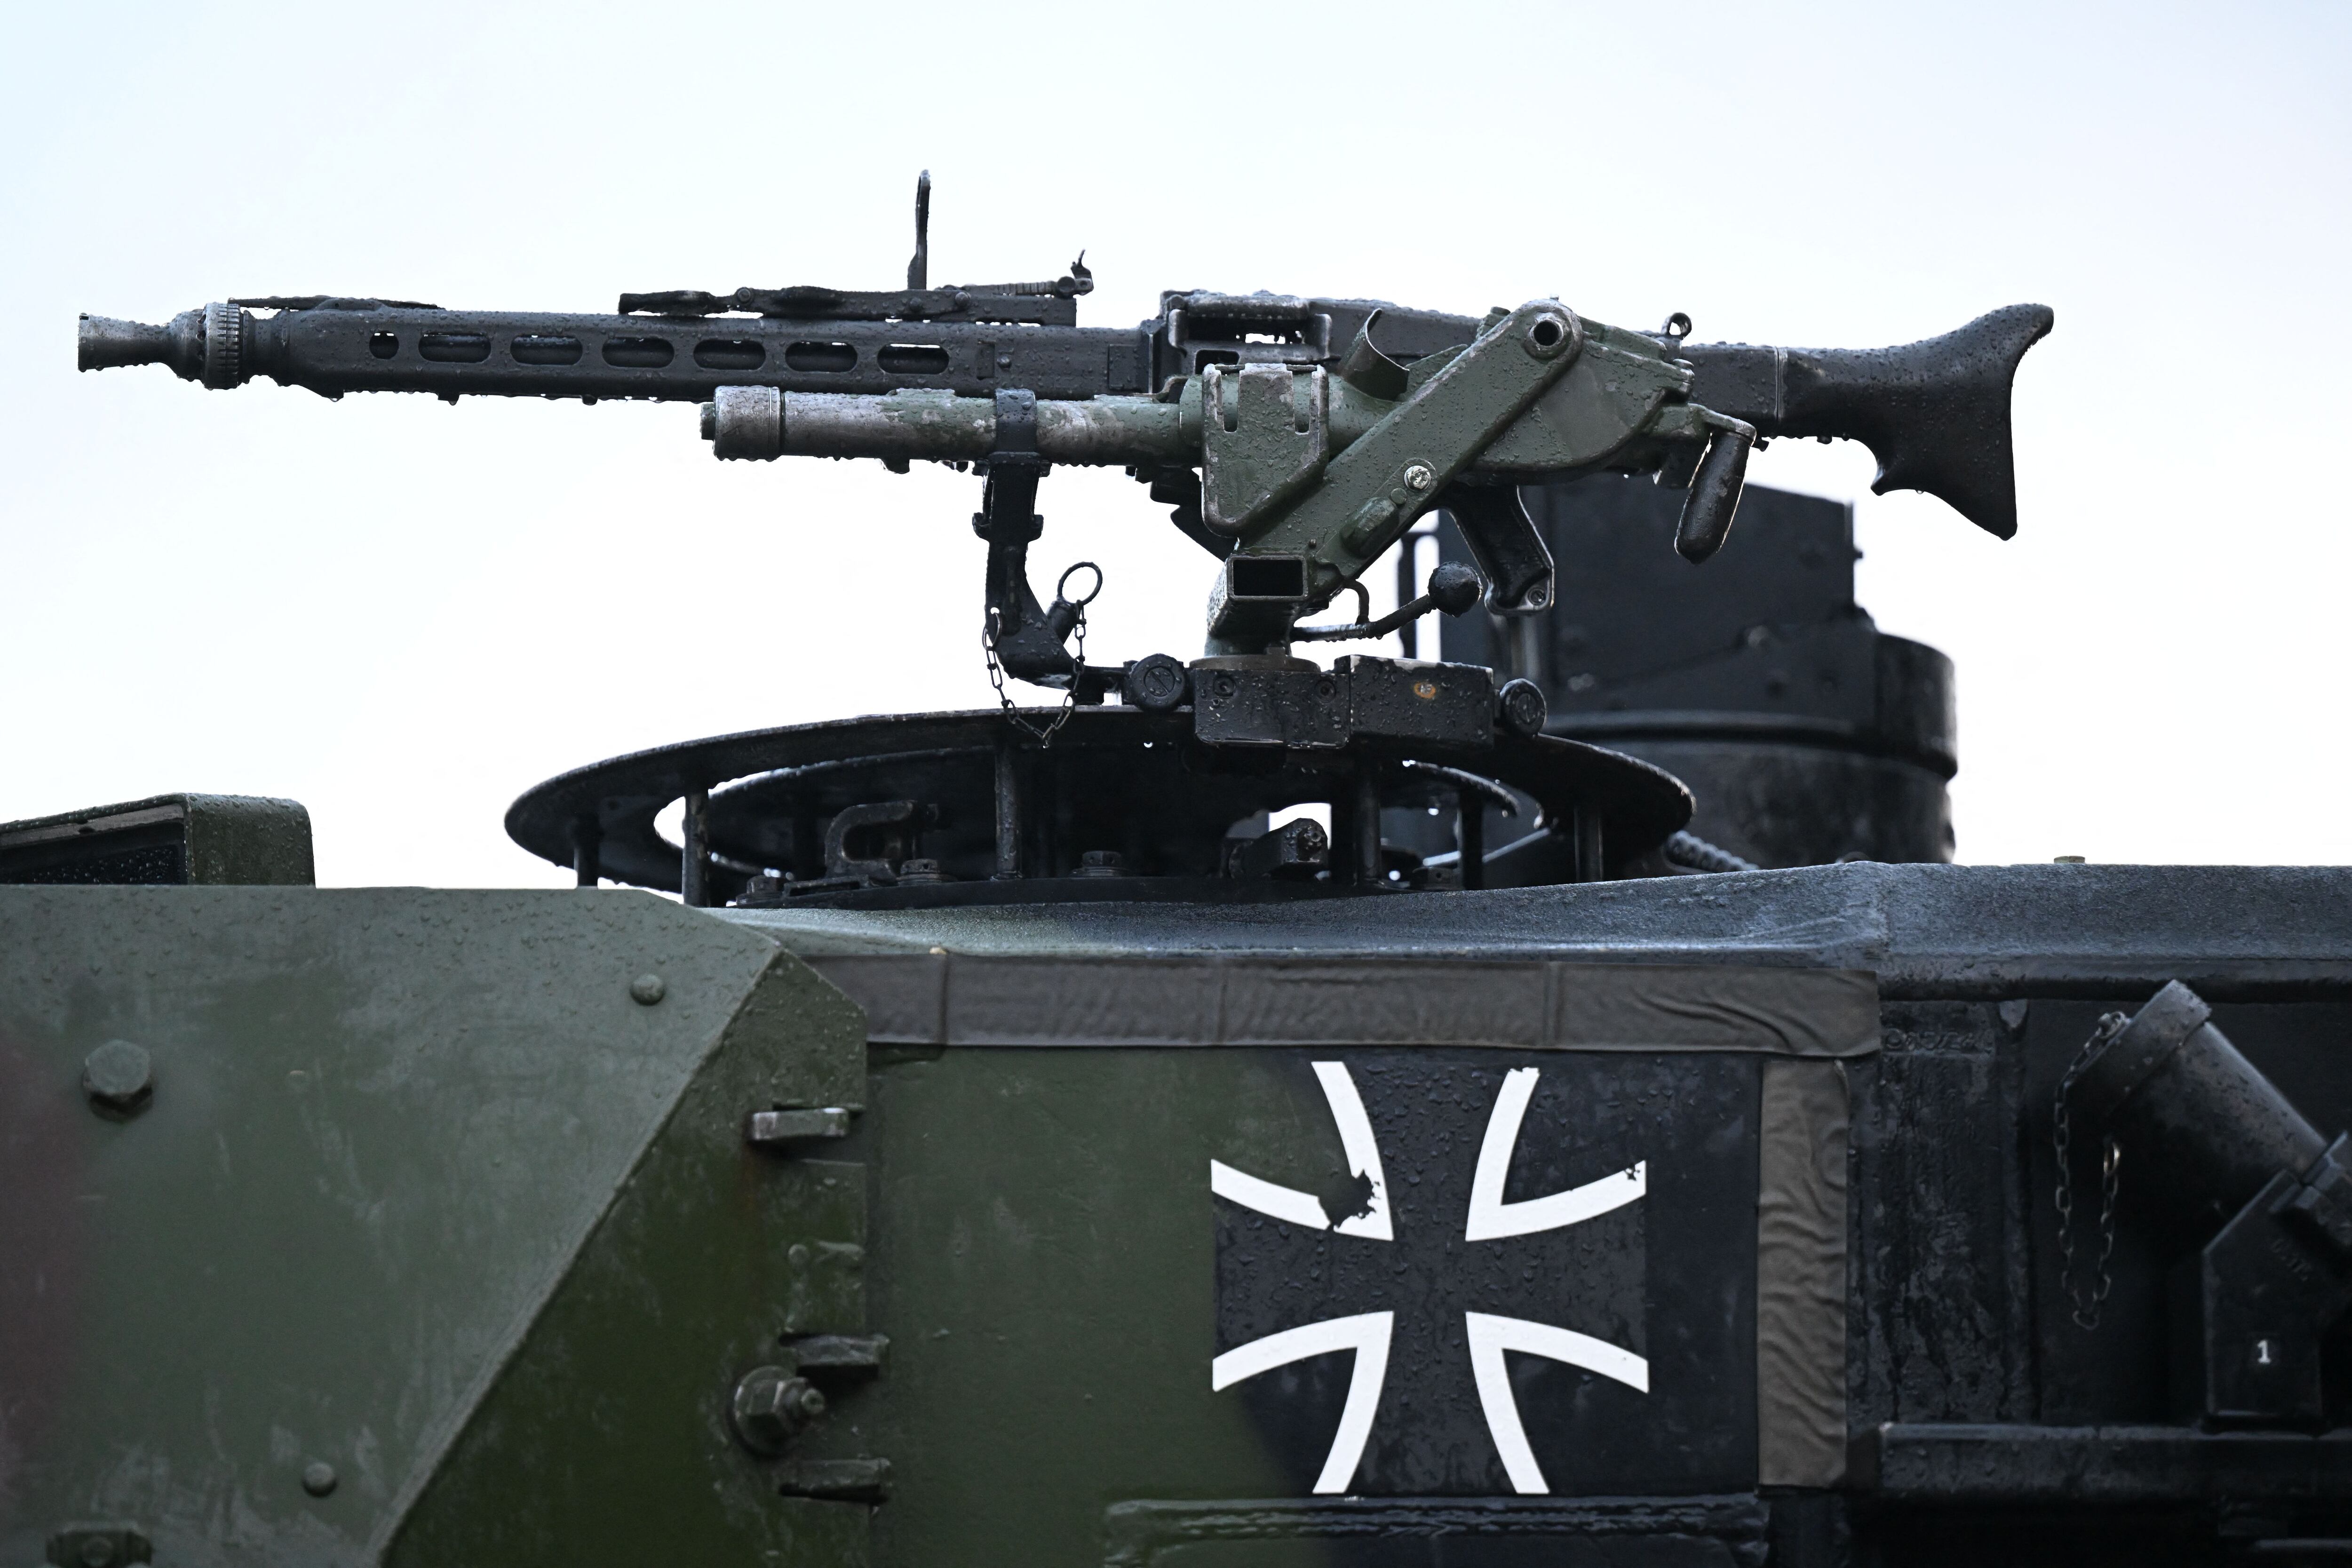 Una ametralladora y el logotipo del ejército alemán (Bundeswehr) se ven en un tanque Leopard 2, en el campo de entrenamiento en Augustdorf, Alemania occidental, el 1 de febrero de 2023